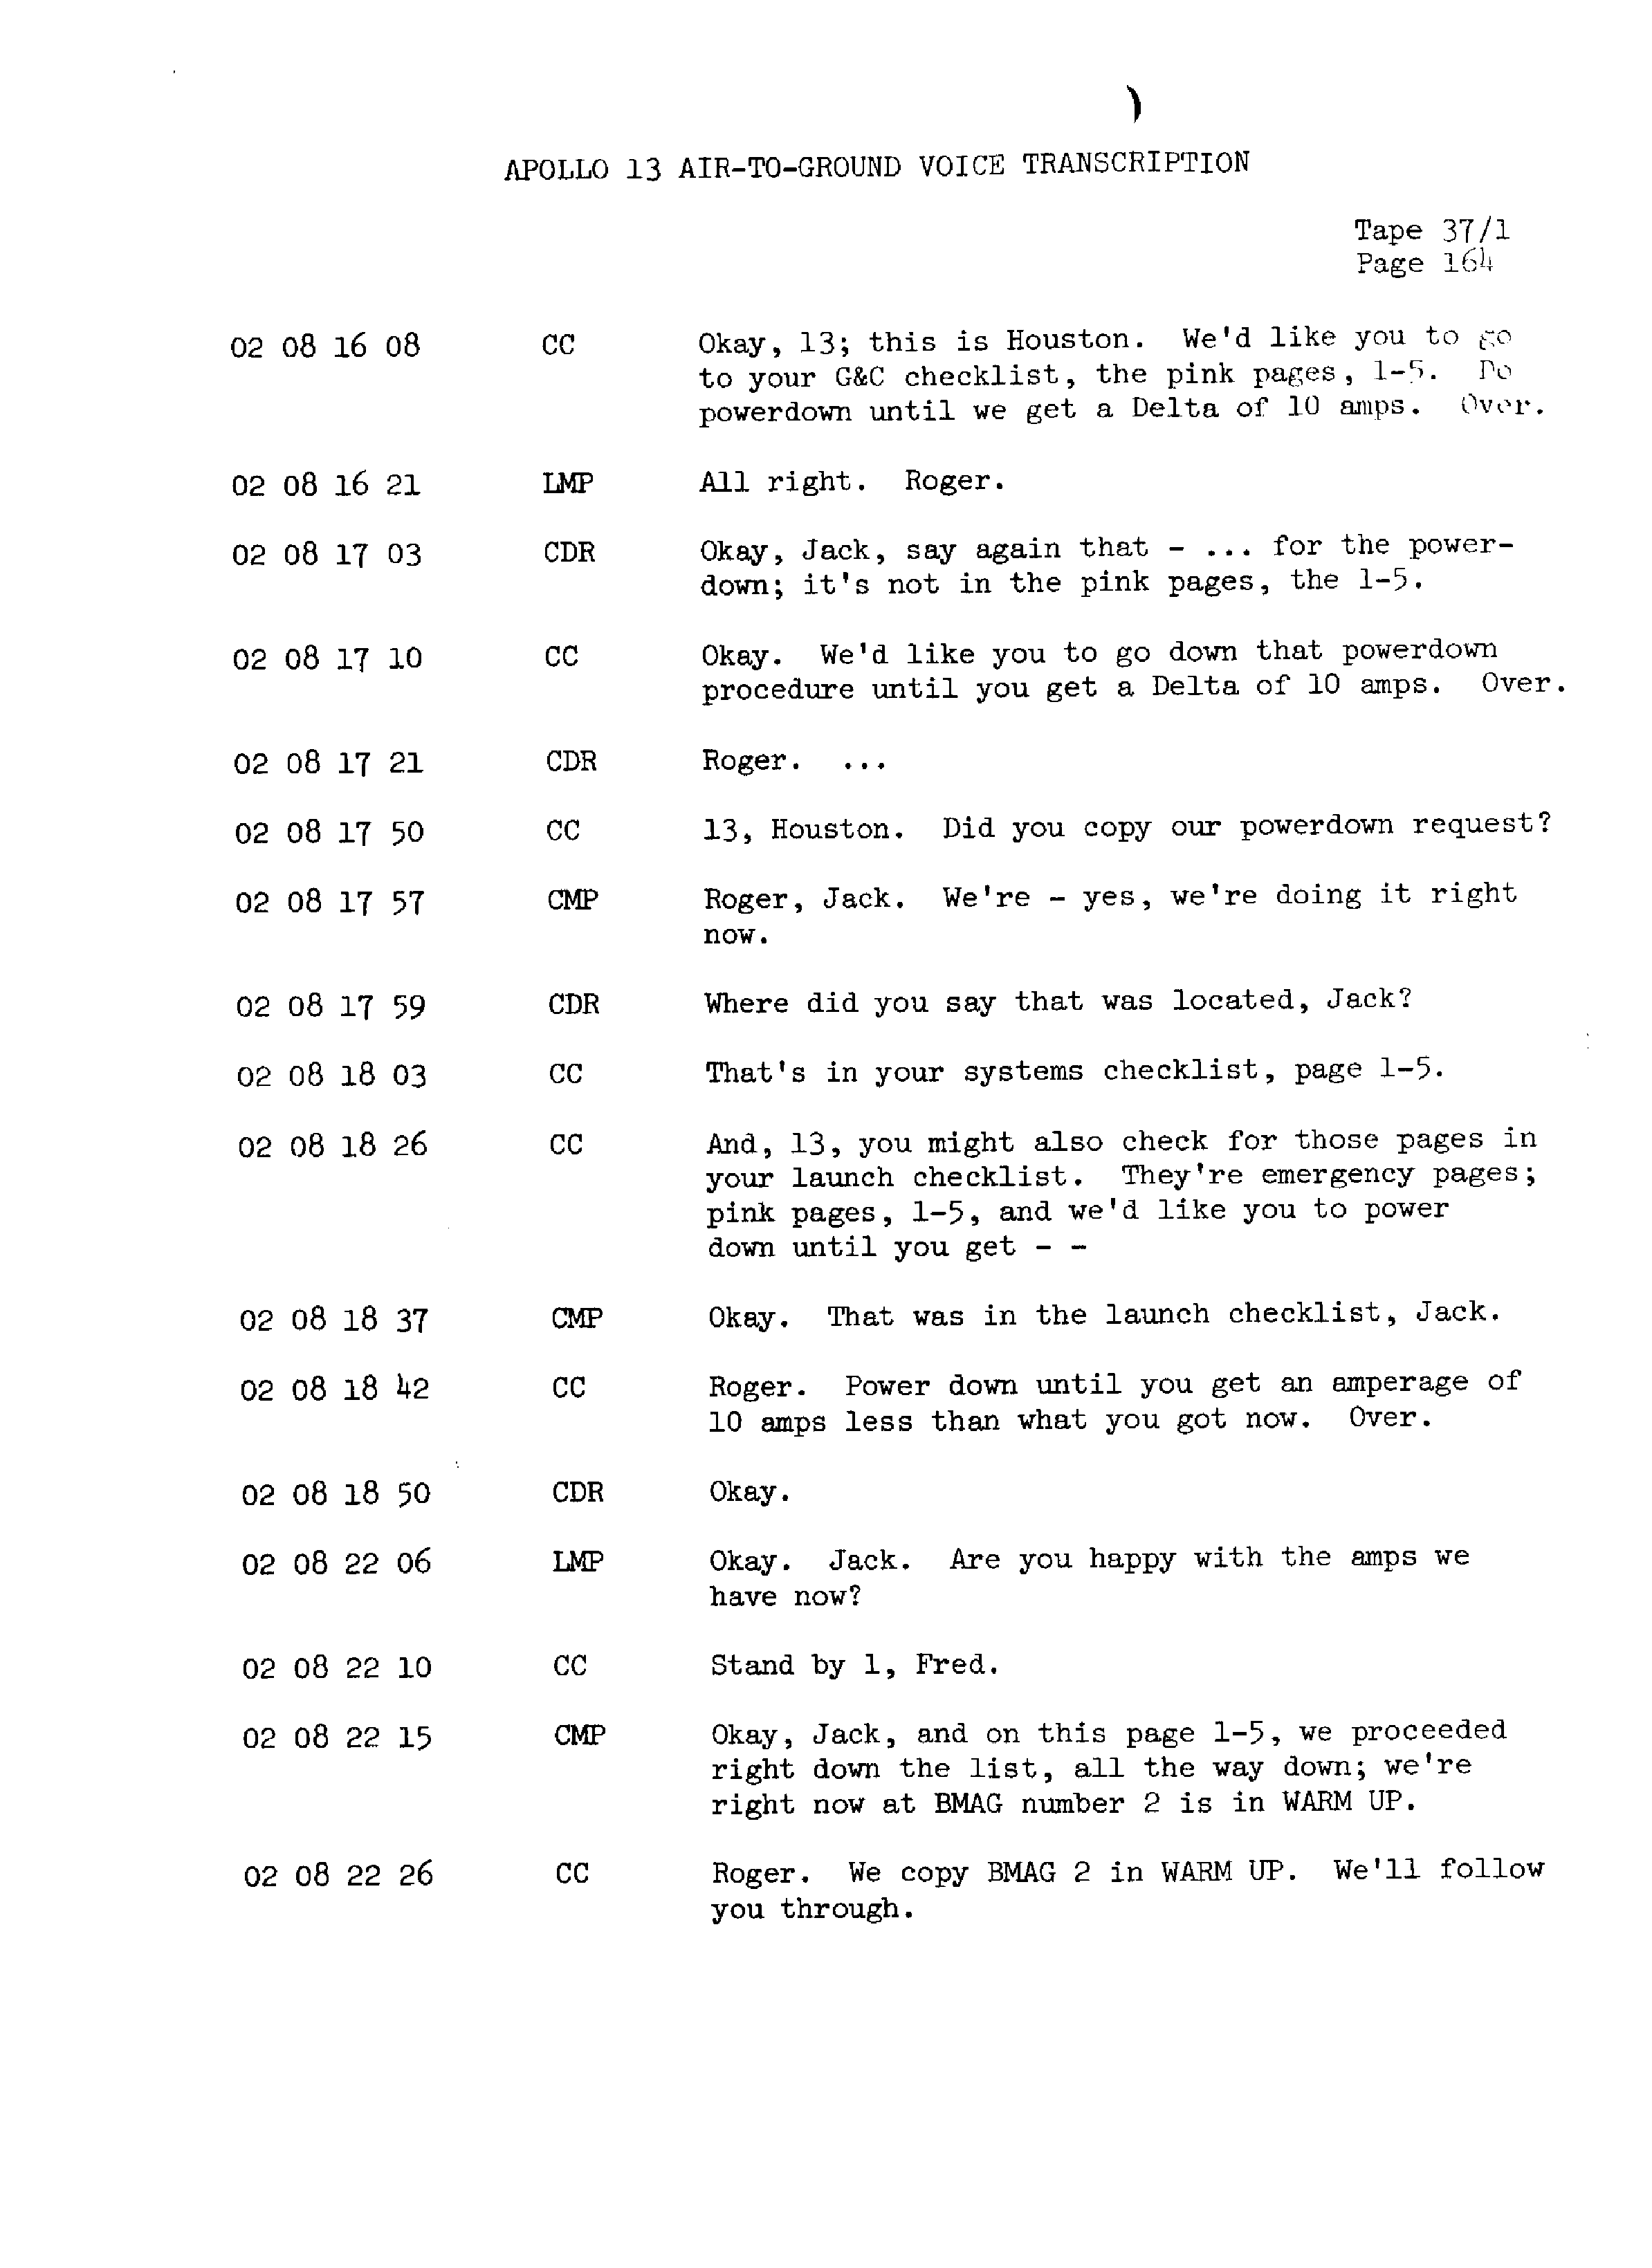 Page 171 of Apollo 13’s original transcript